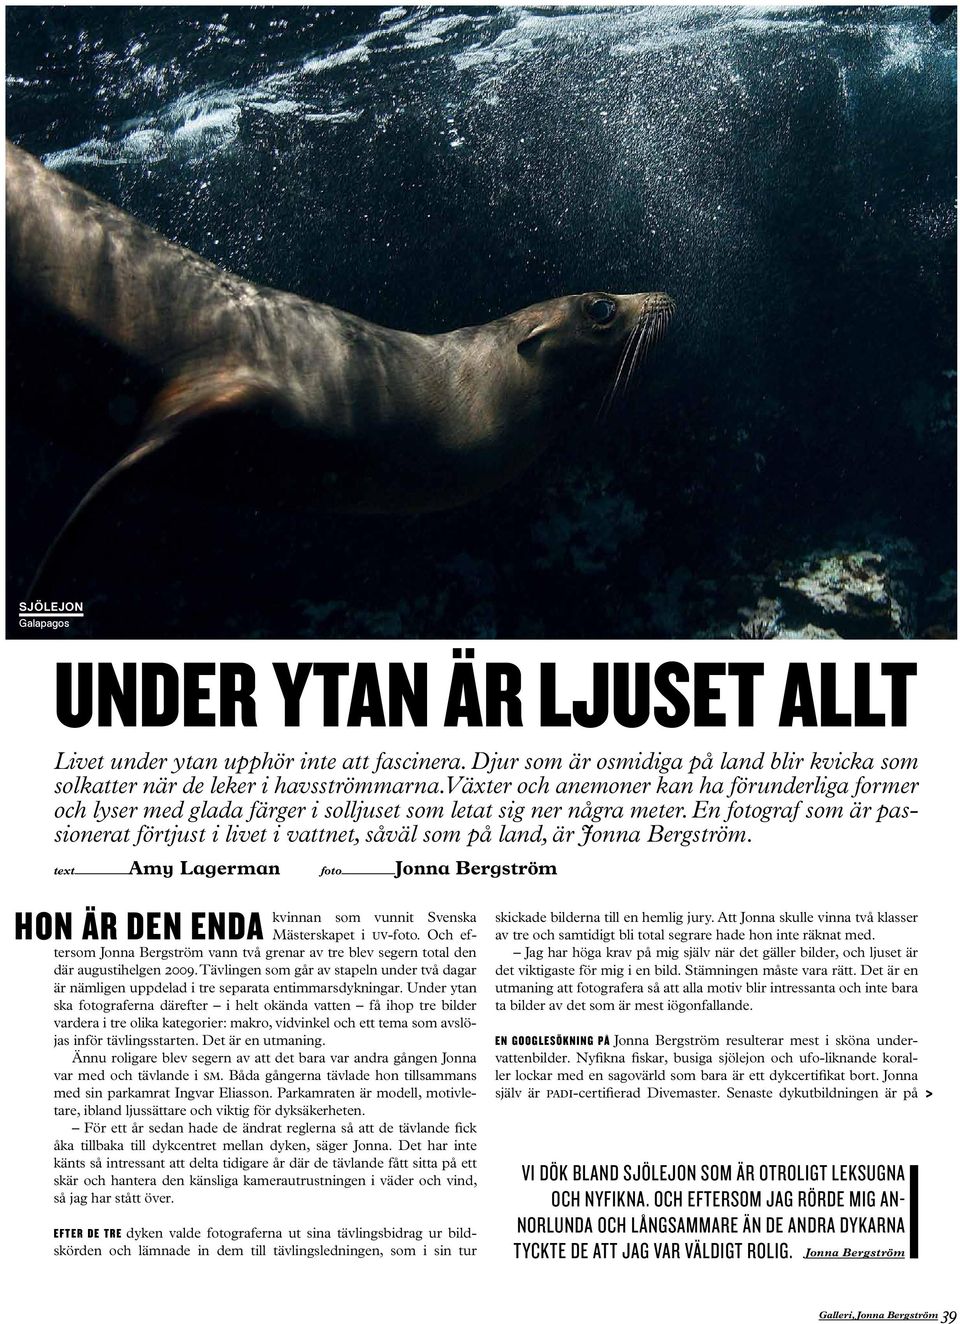 En fotograf som är passionerat förtjust i livet i vattnet, såväl som på land, är Jonna Bergström.